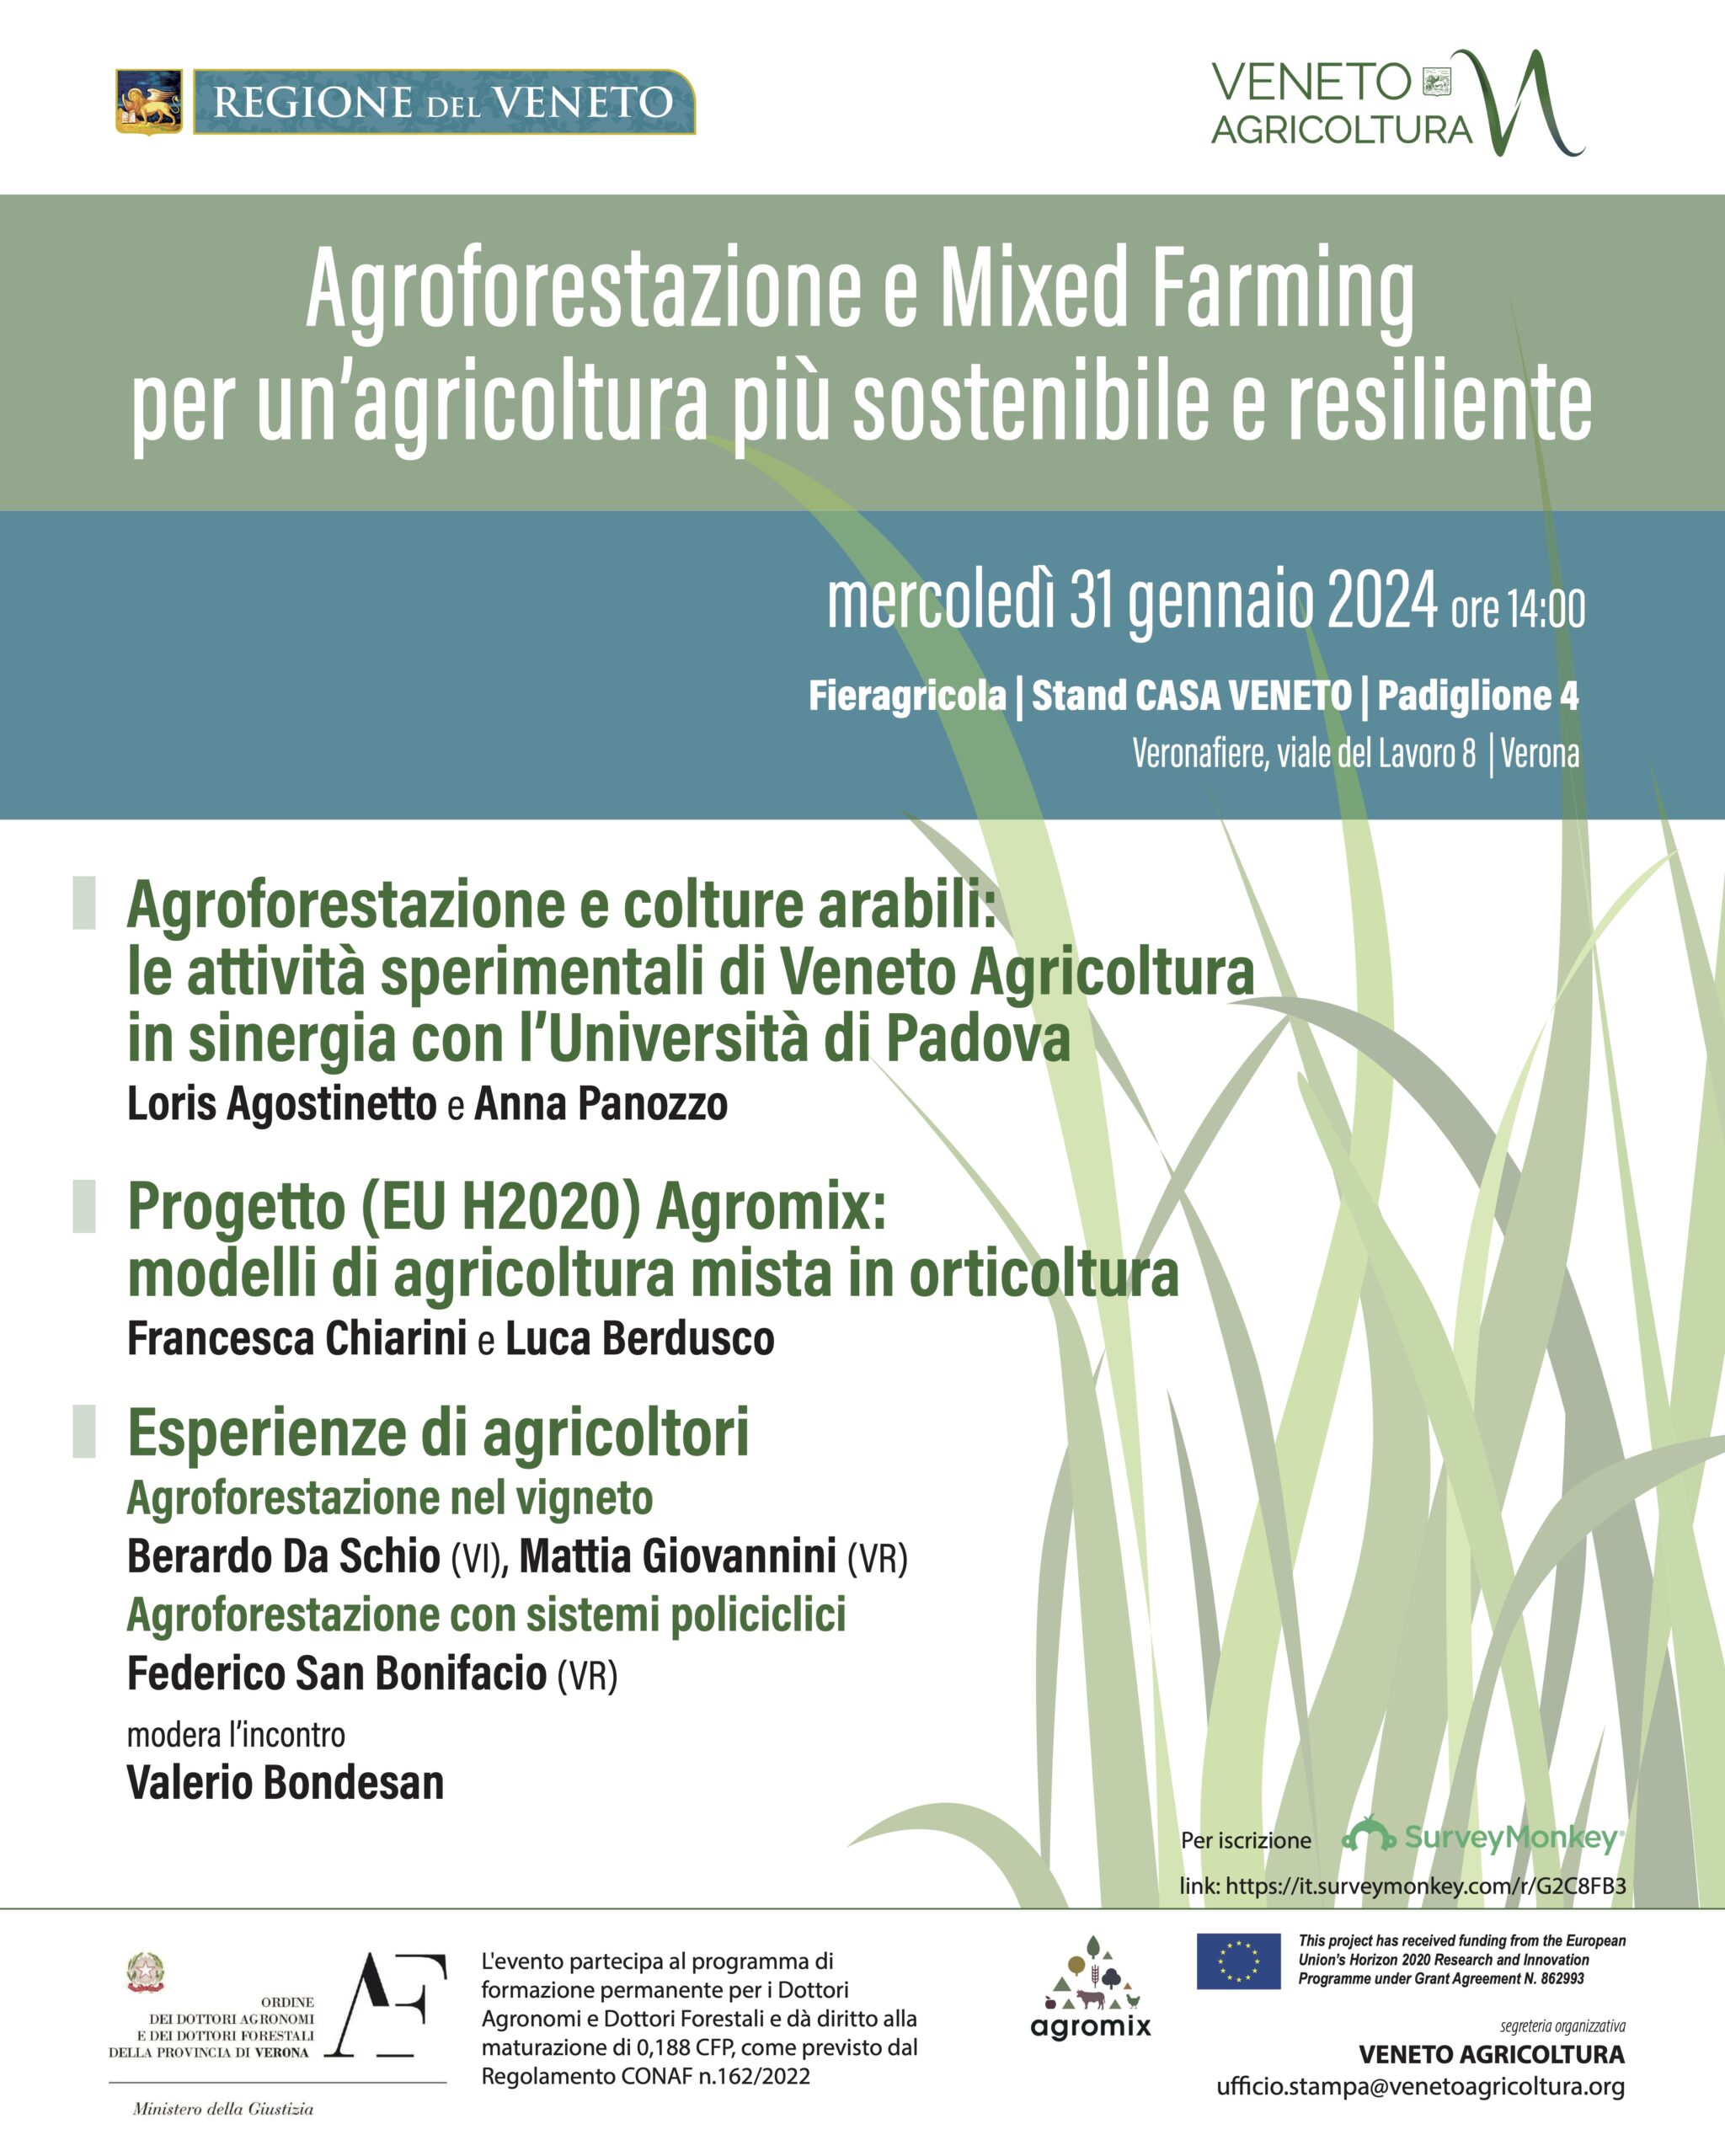 Veneto Agricoltura Event